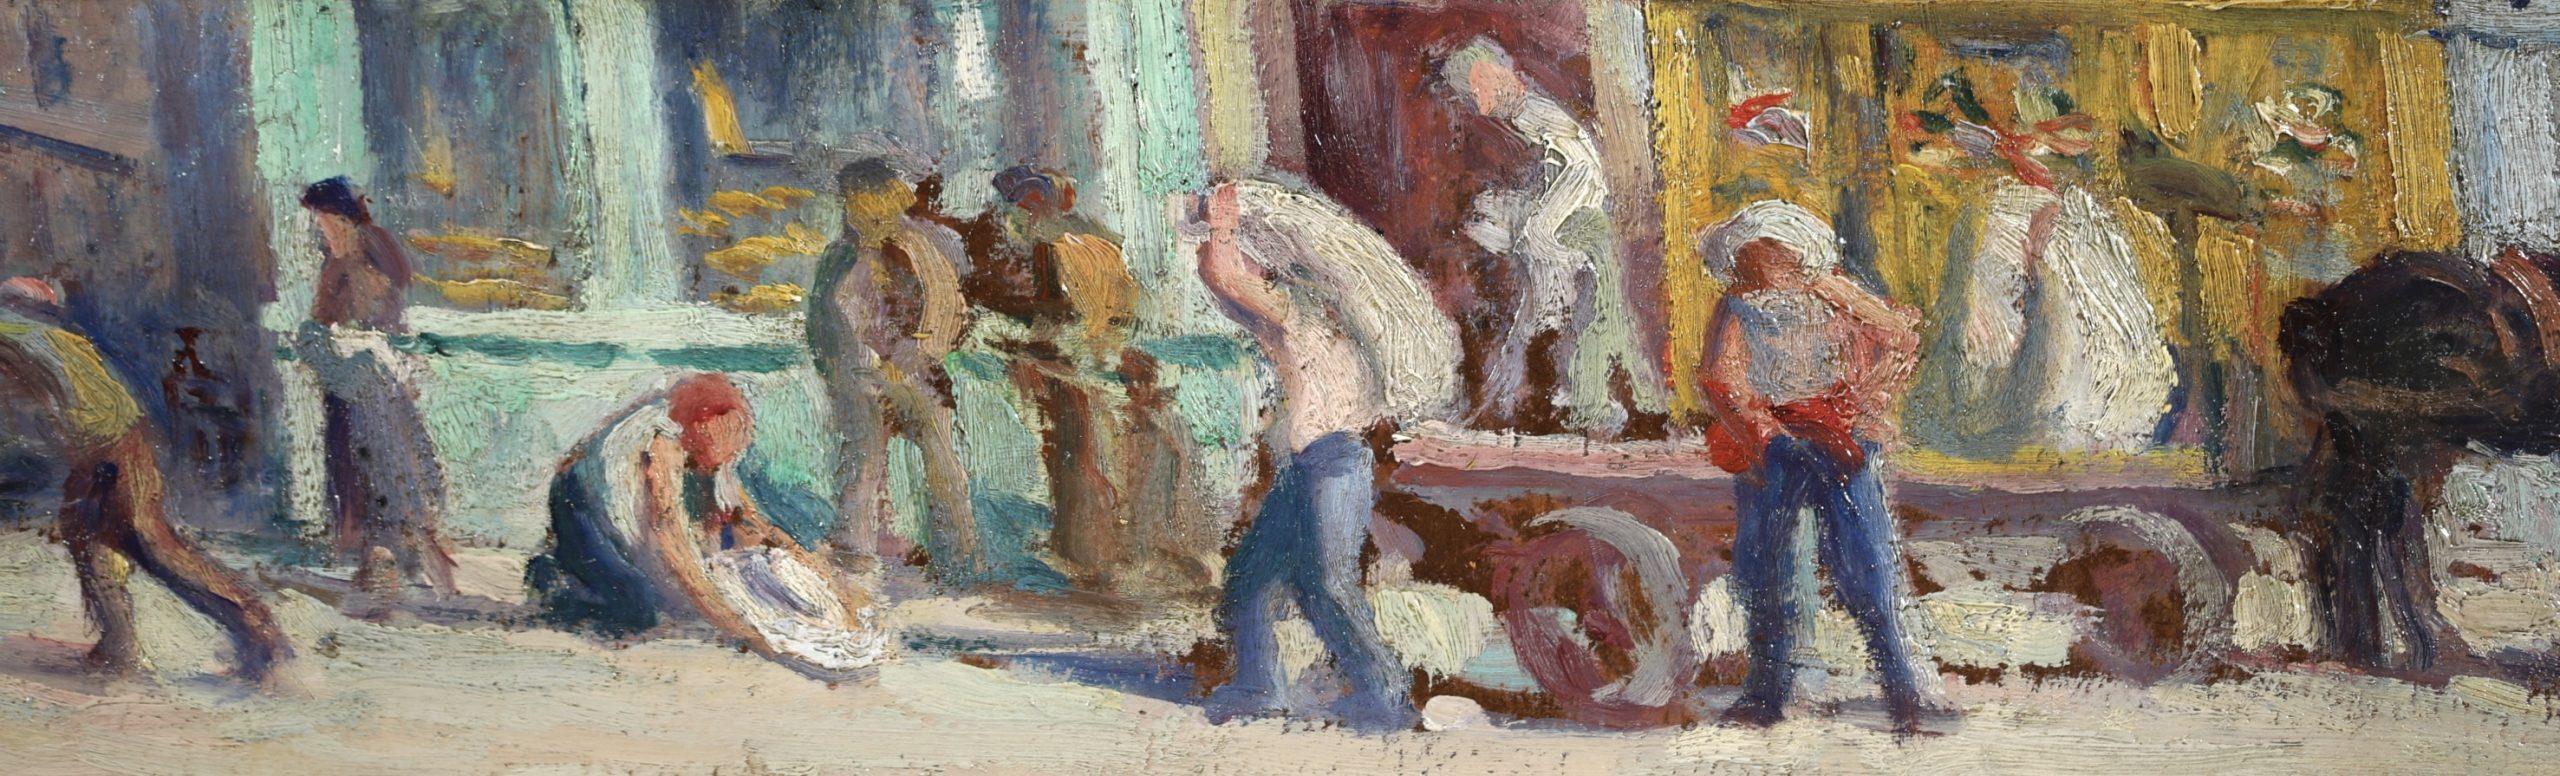 Rue de Paris - Impressionist Landscape Oil Painting by Maximillien Luce For Sale 2